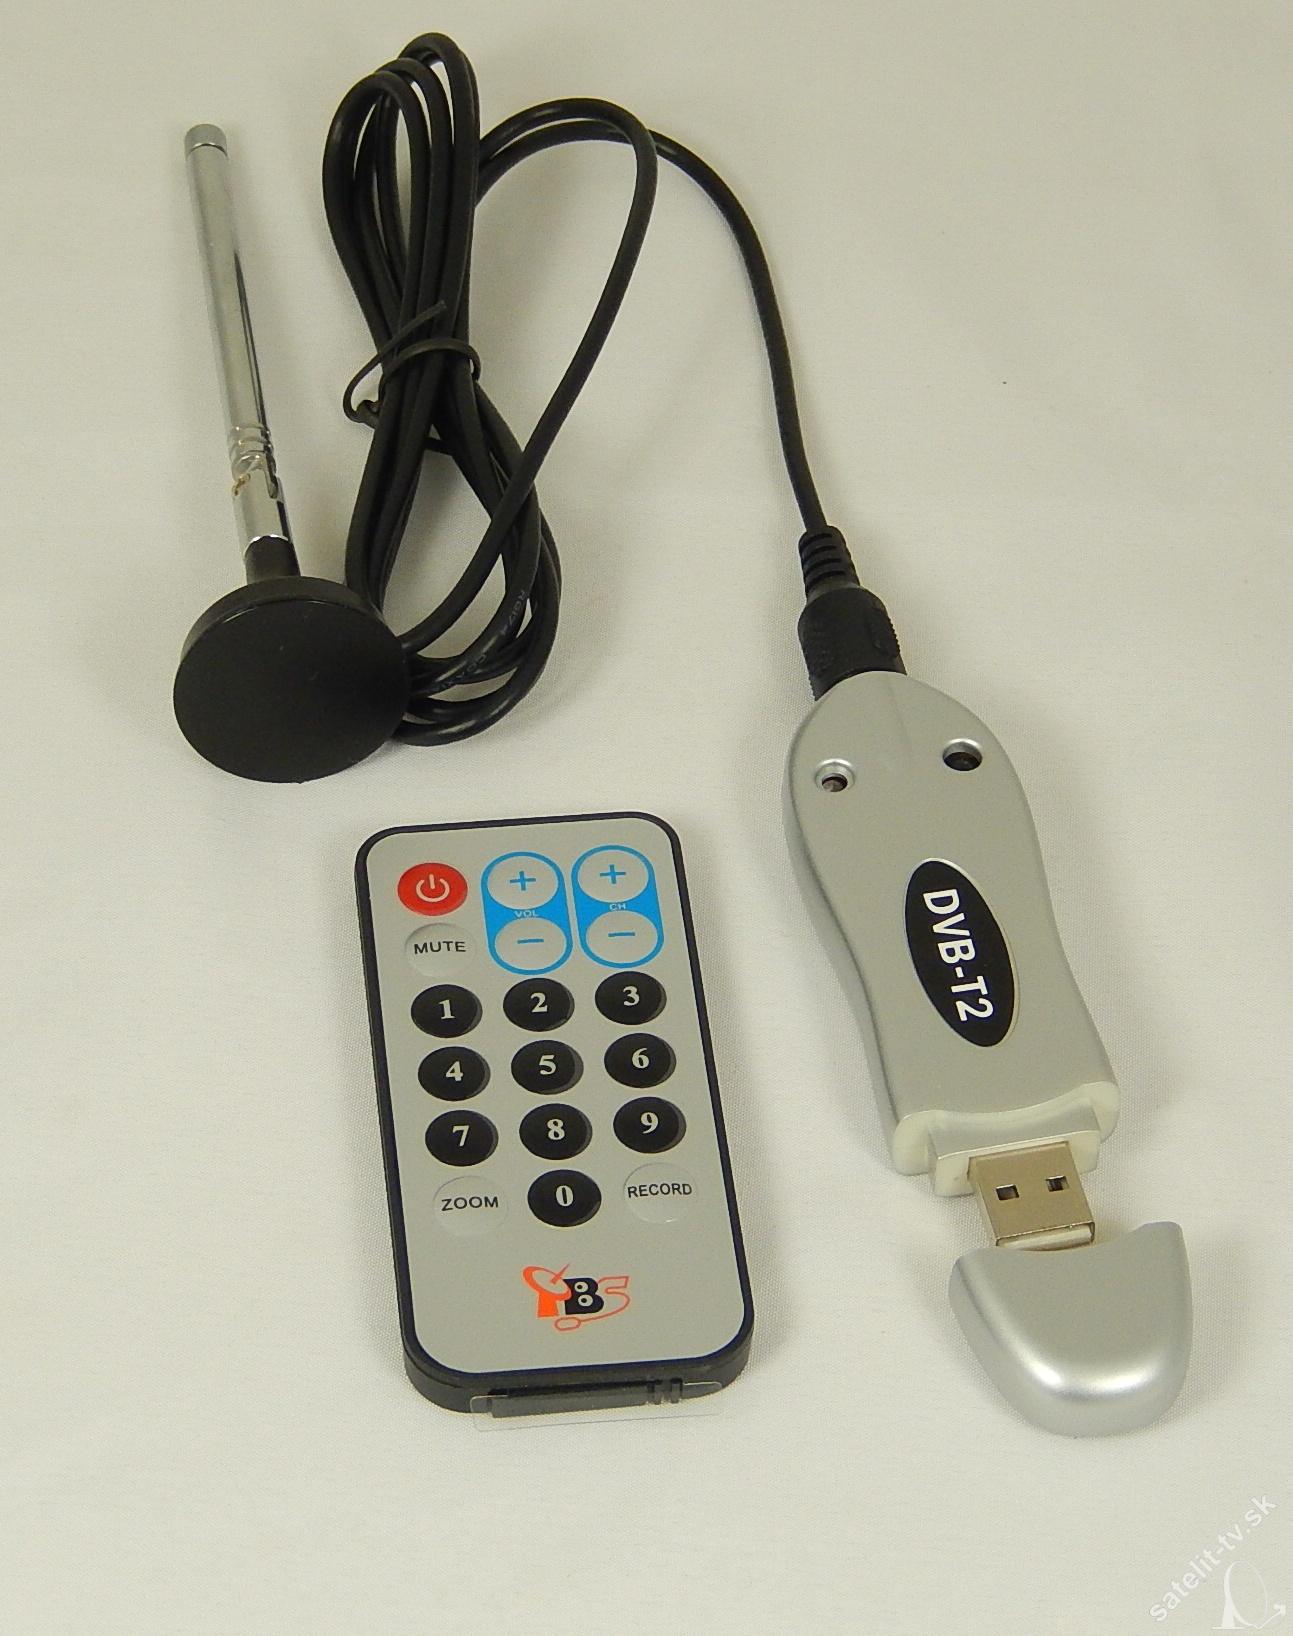 TBS 5220 USB DVB-T2 / T / C Tuner TV Stick